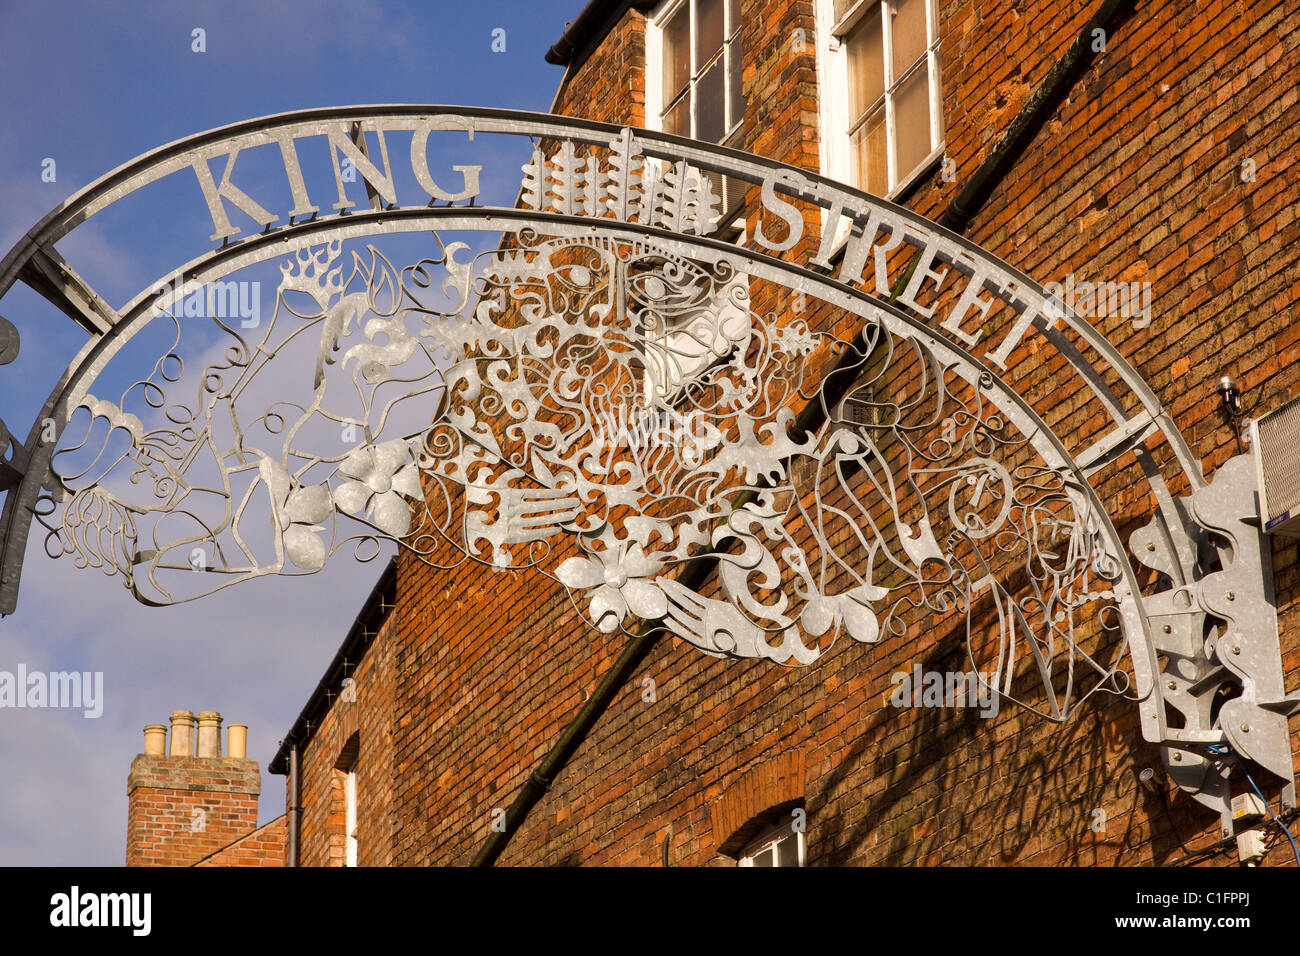 Calle de metal decorativo firmar por el artista Ben Coode-Adams, King Street, Melton Mowbray, Leicestershire, Inglaterra, Reino Unido. Foto de stock